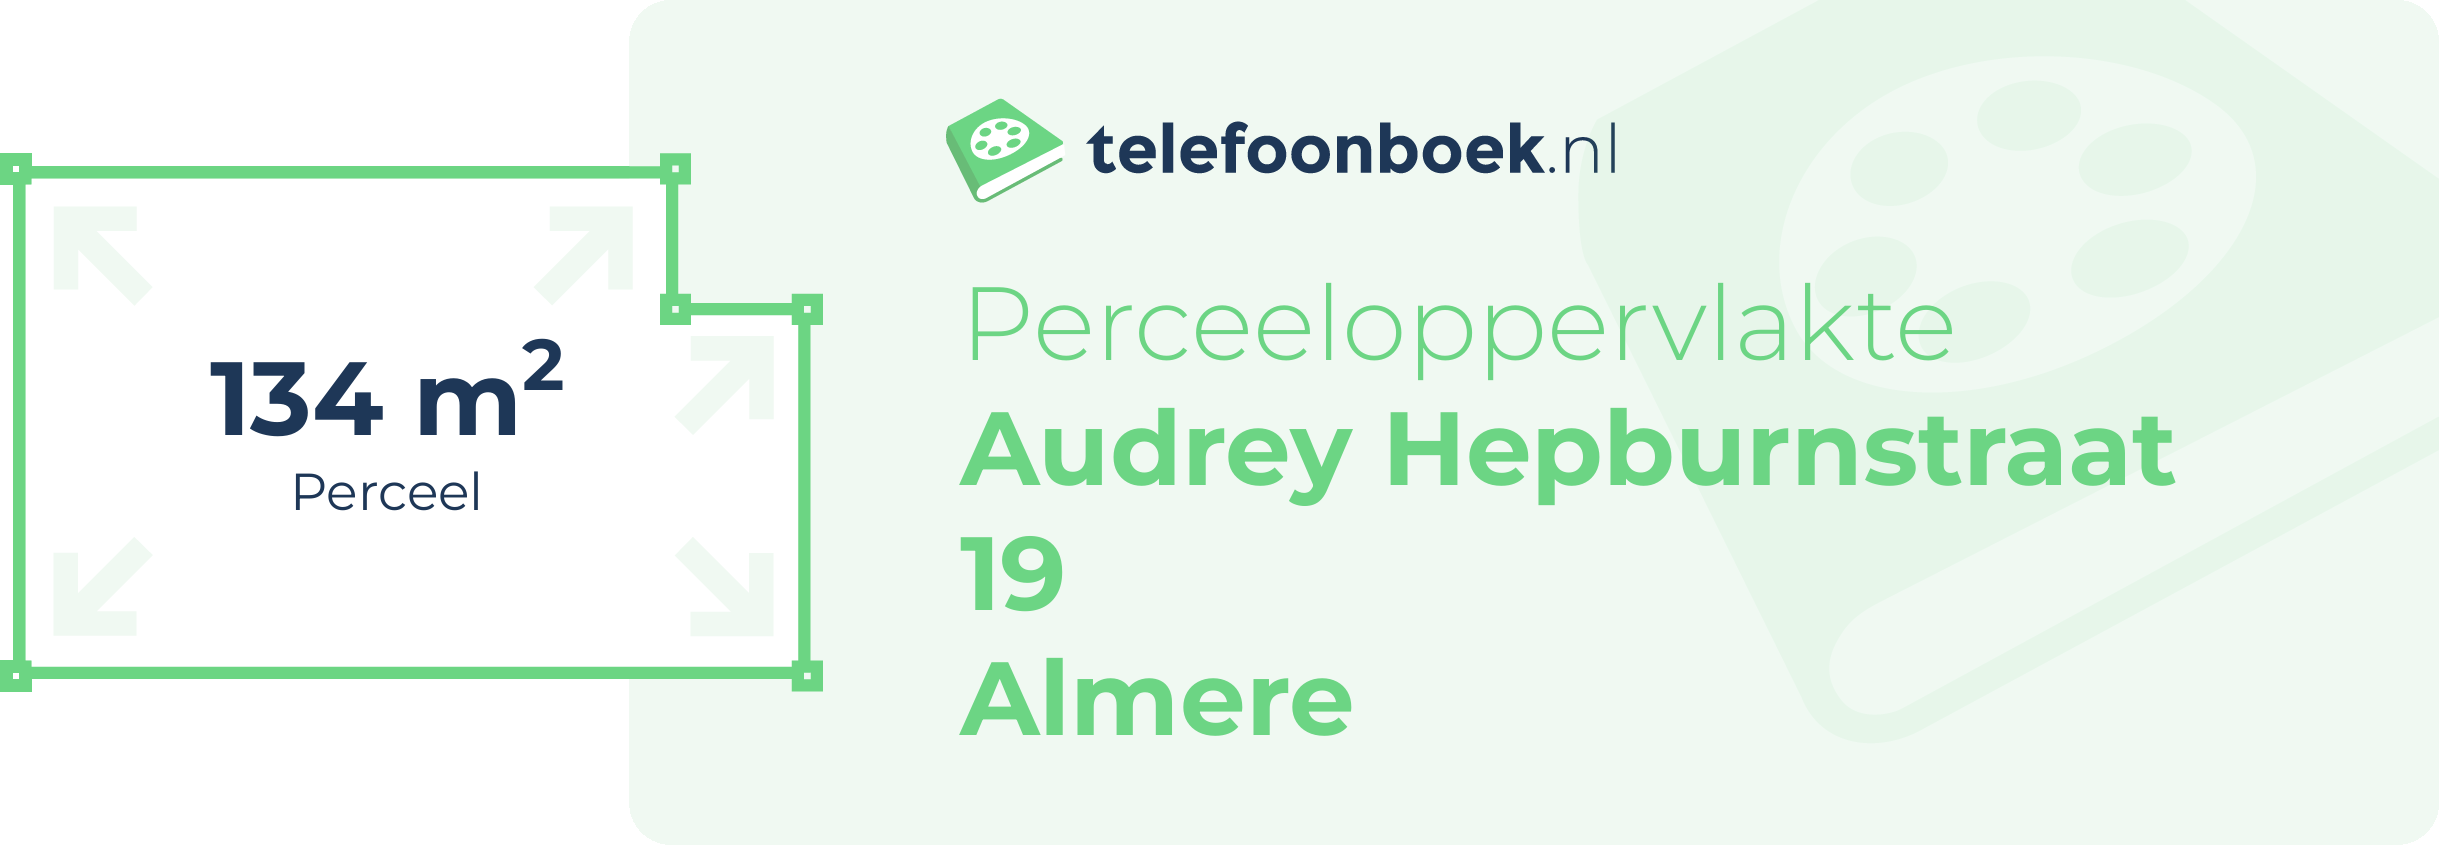 Perceeloppervlakte Audrey Hepburnstraat 19 Almere